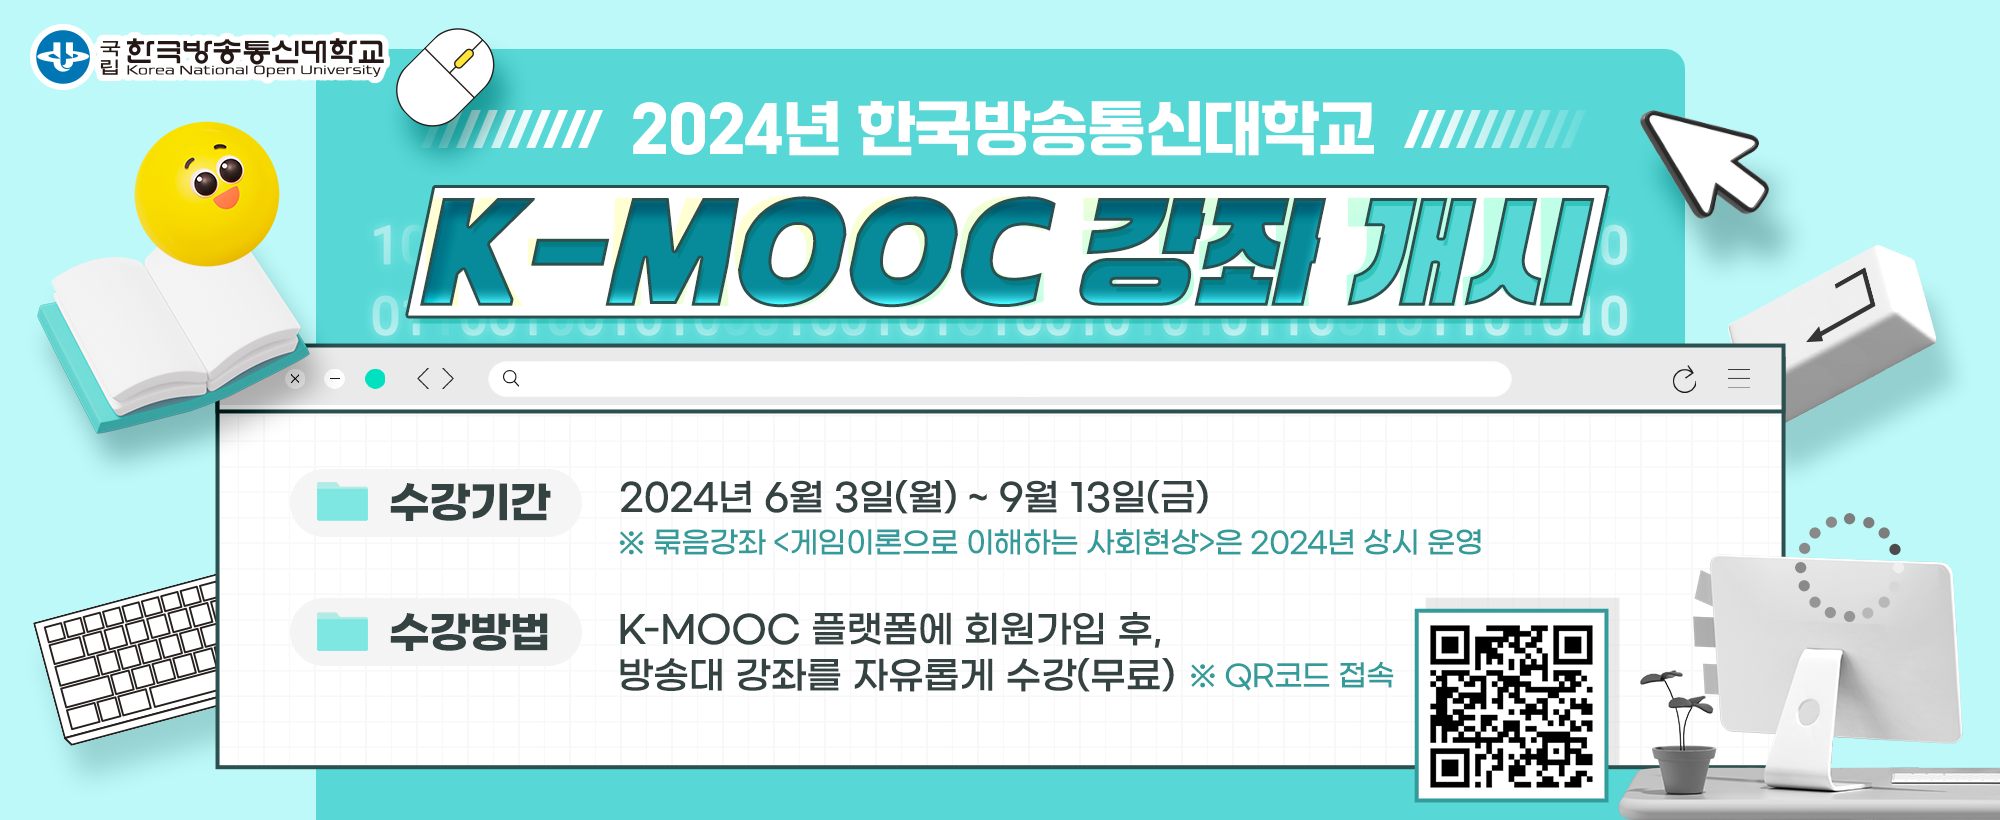 K-MOOC 강좌 개시